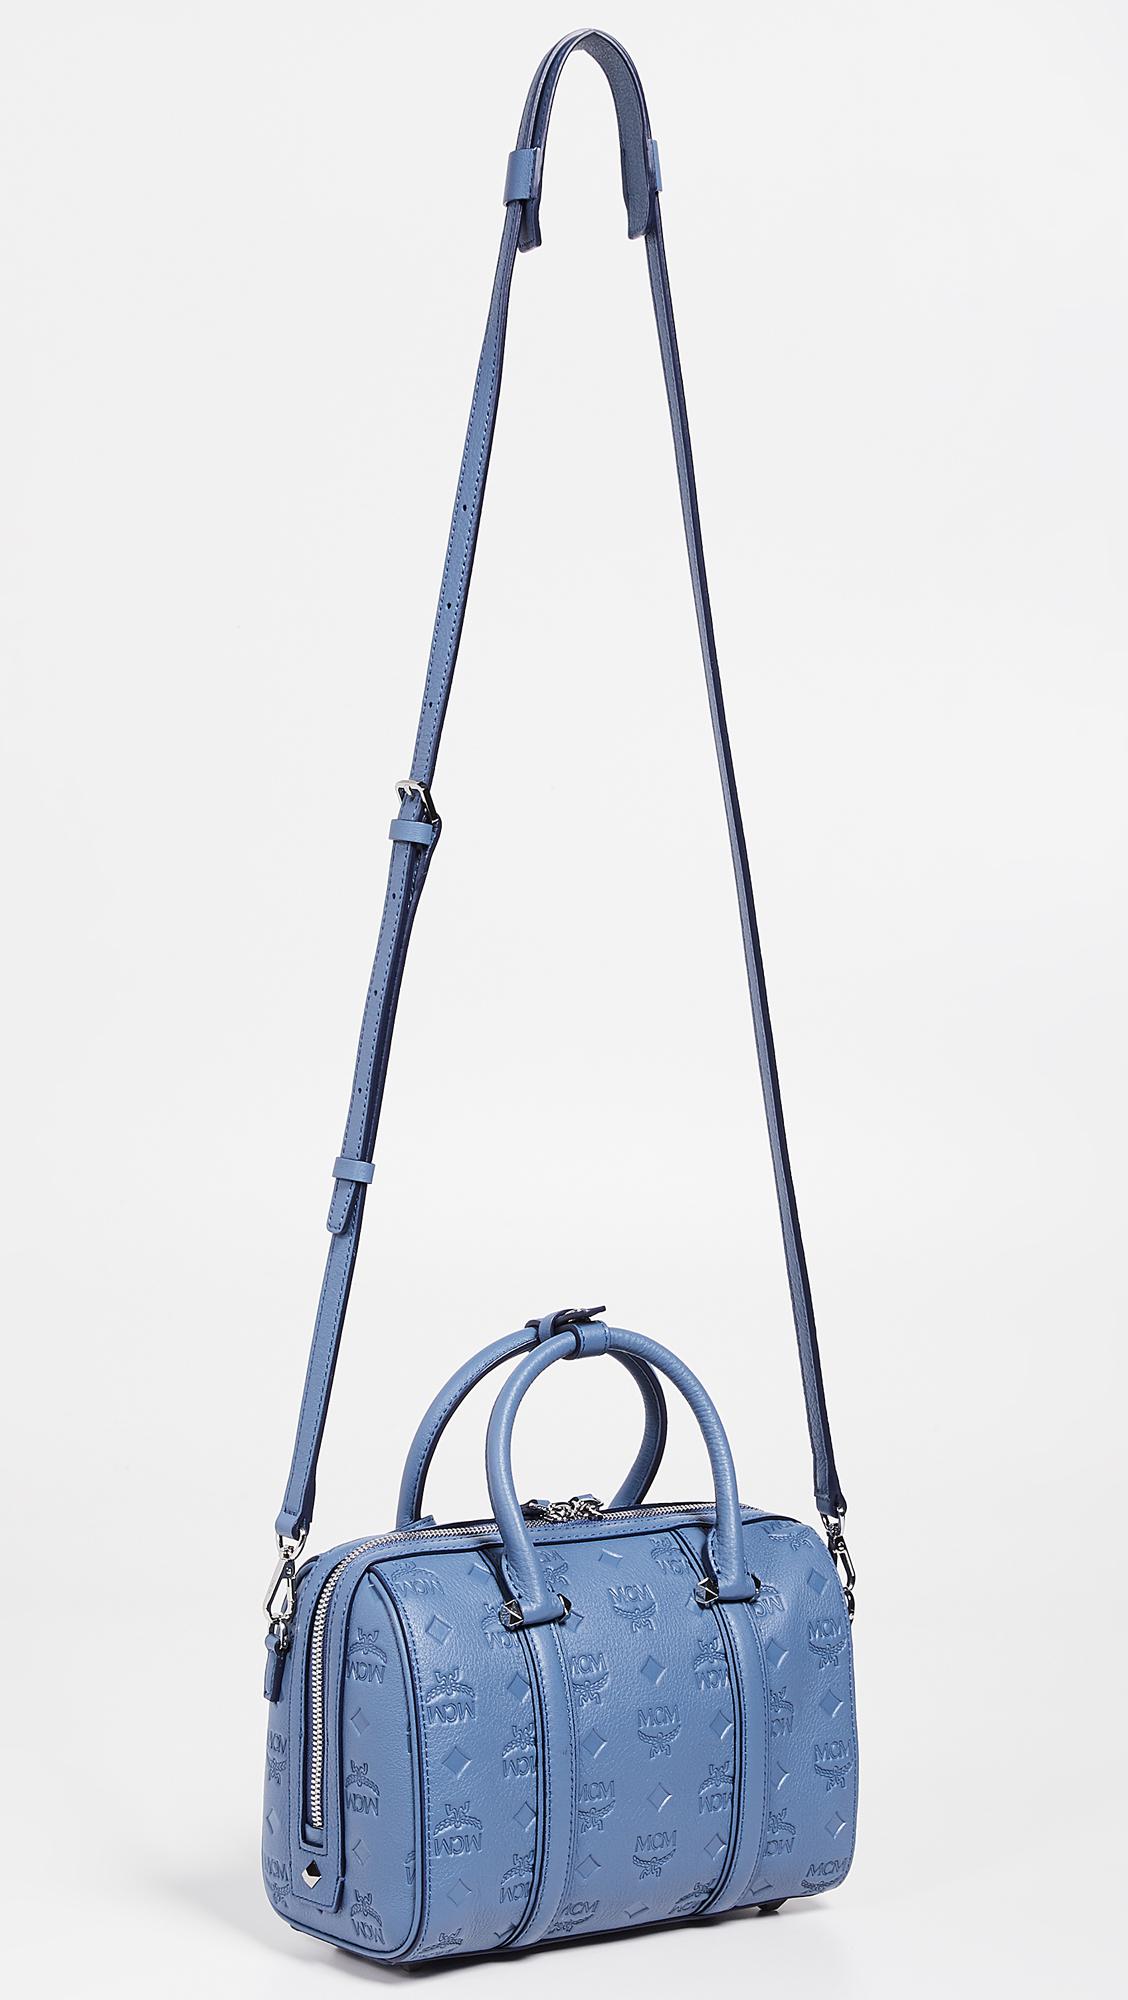 NEW MCM Vintage Jacquard small boston bag, blue, $1060 NWT